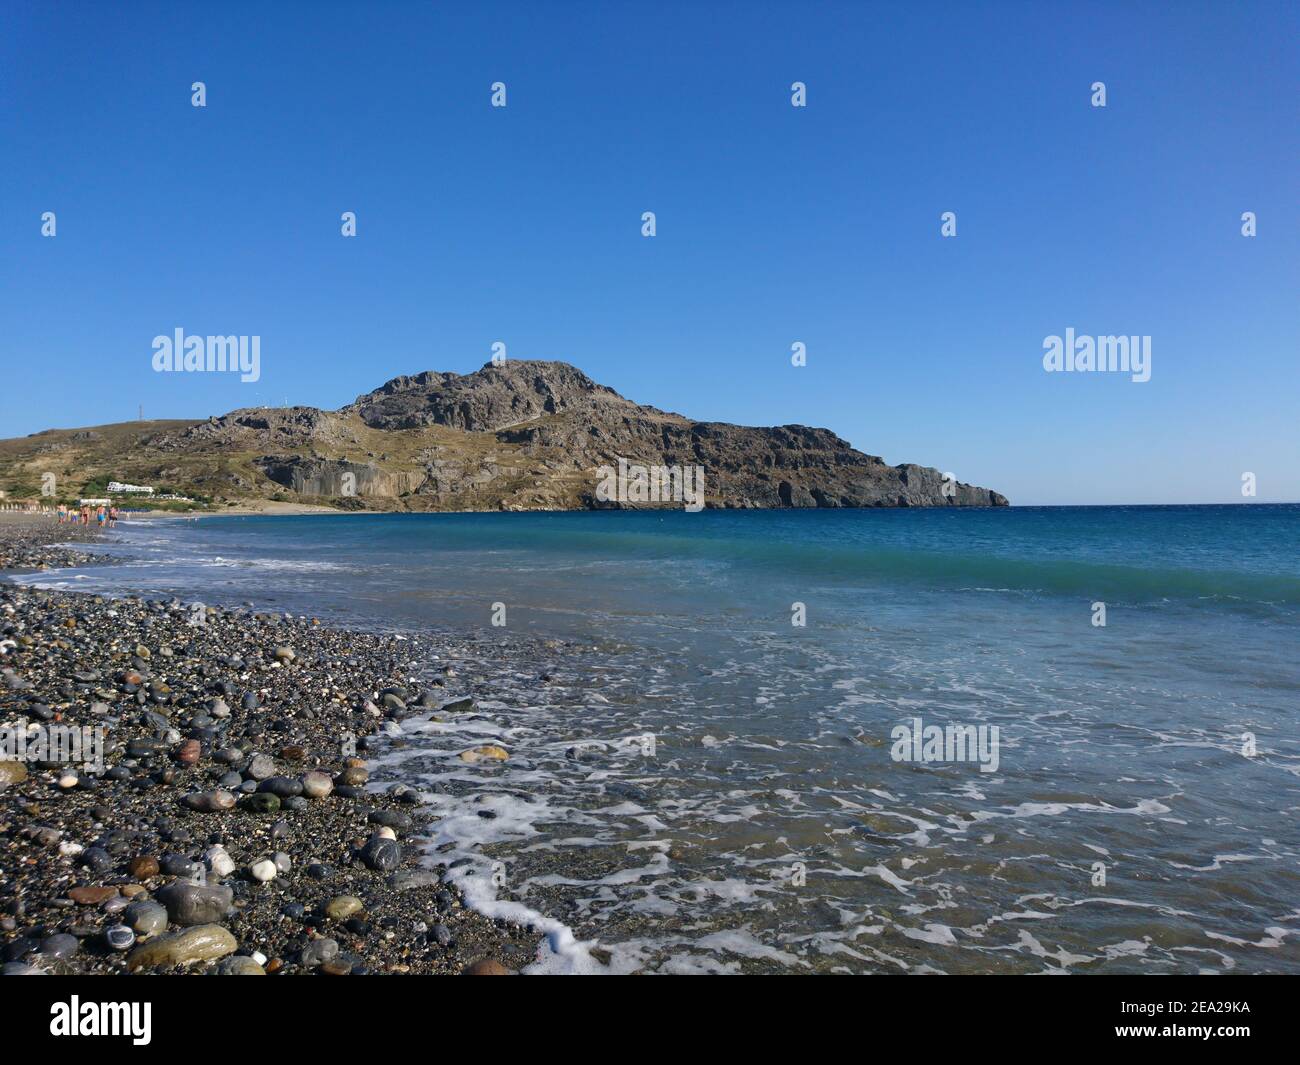 Creta, Plakias spiaggia nel Mar Libico sulla costa meridionale dell'isola greca di Creta. Spiaggia rocciosa sullo sfondo della montagna Foto Stock